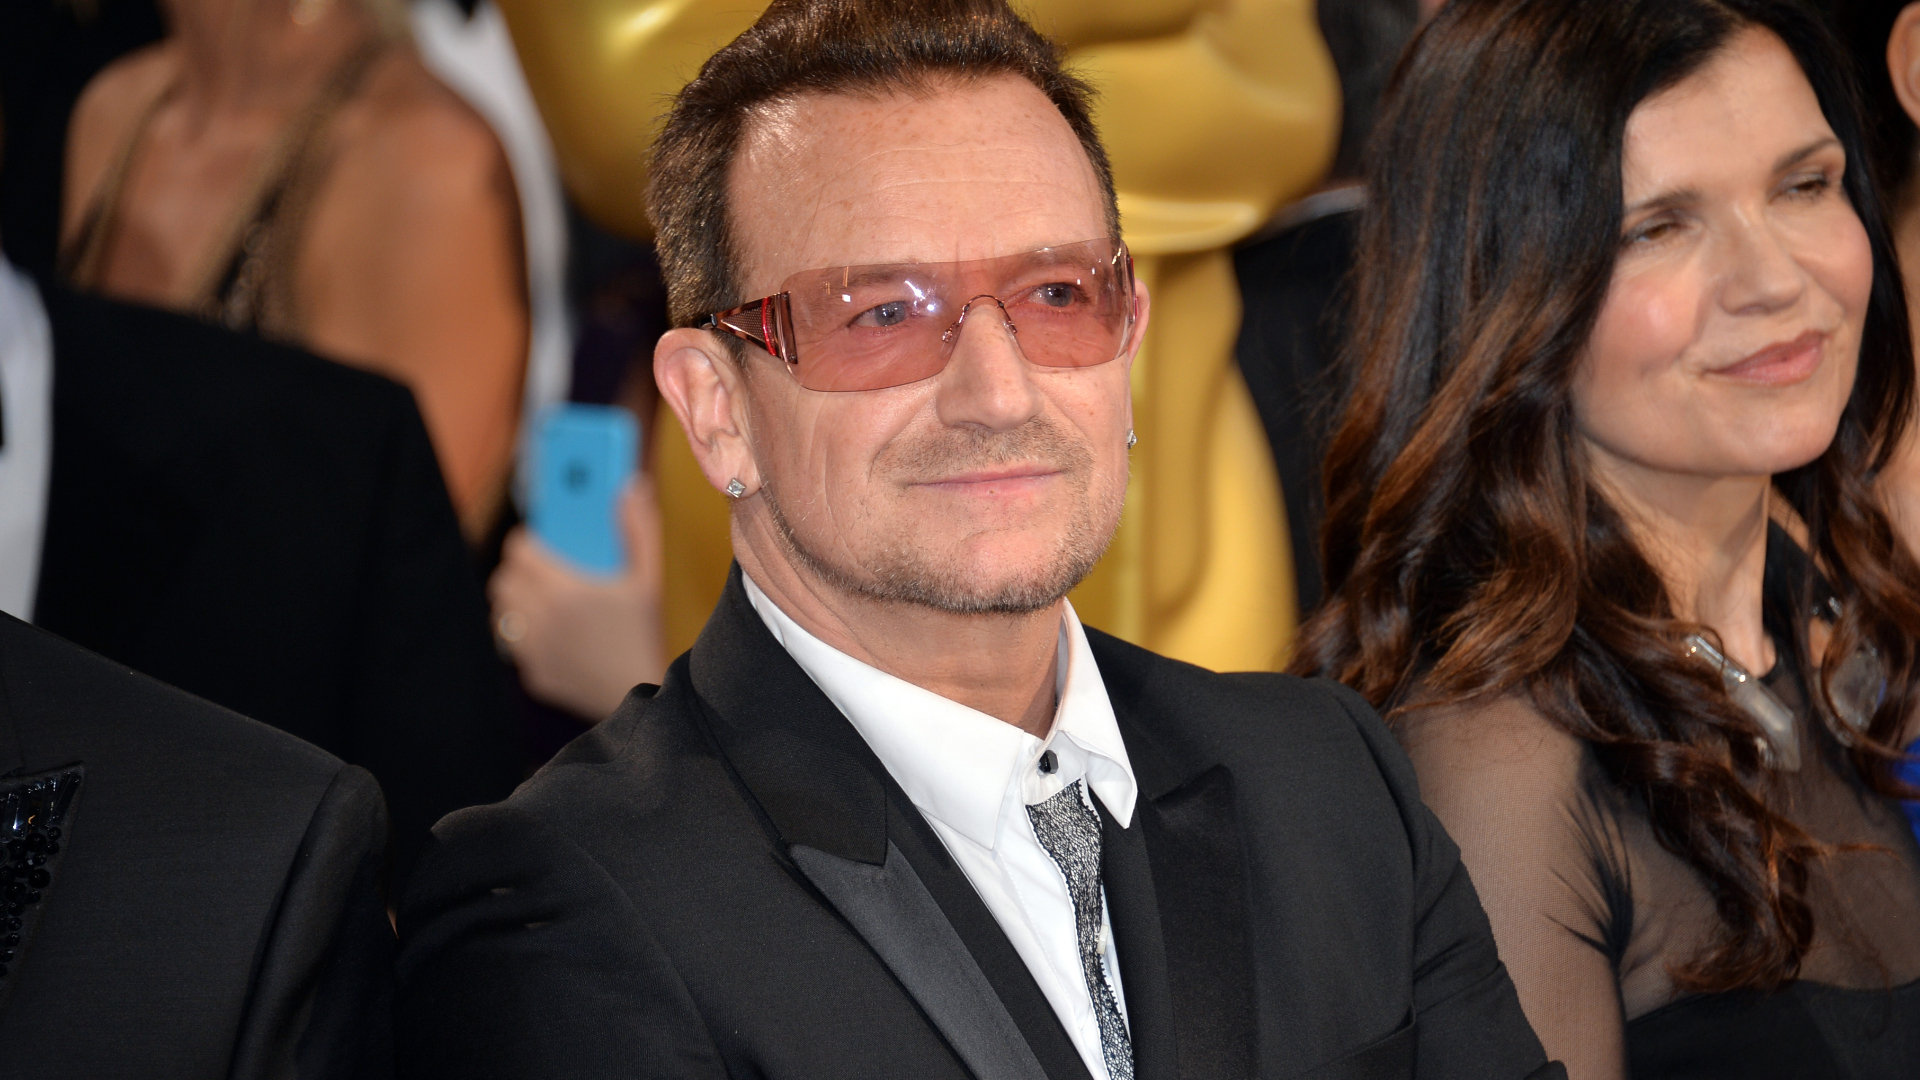 Bono Vox surpreende ao revelar que irmão é fruto de traição do pai com a tia: “Tudo mantido em segredo”